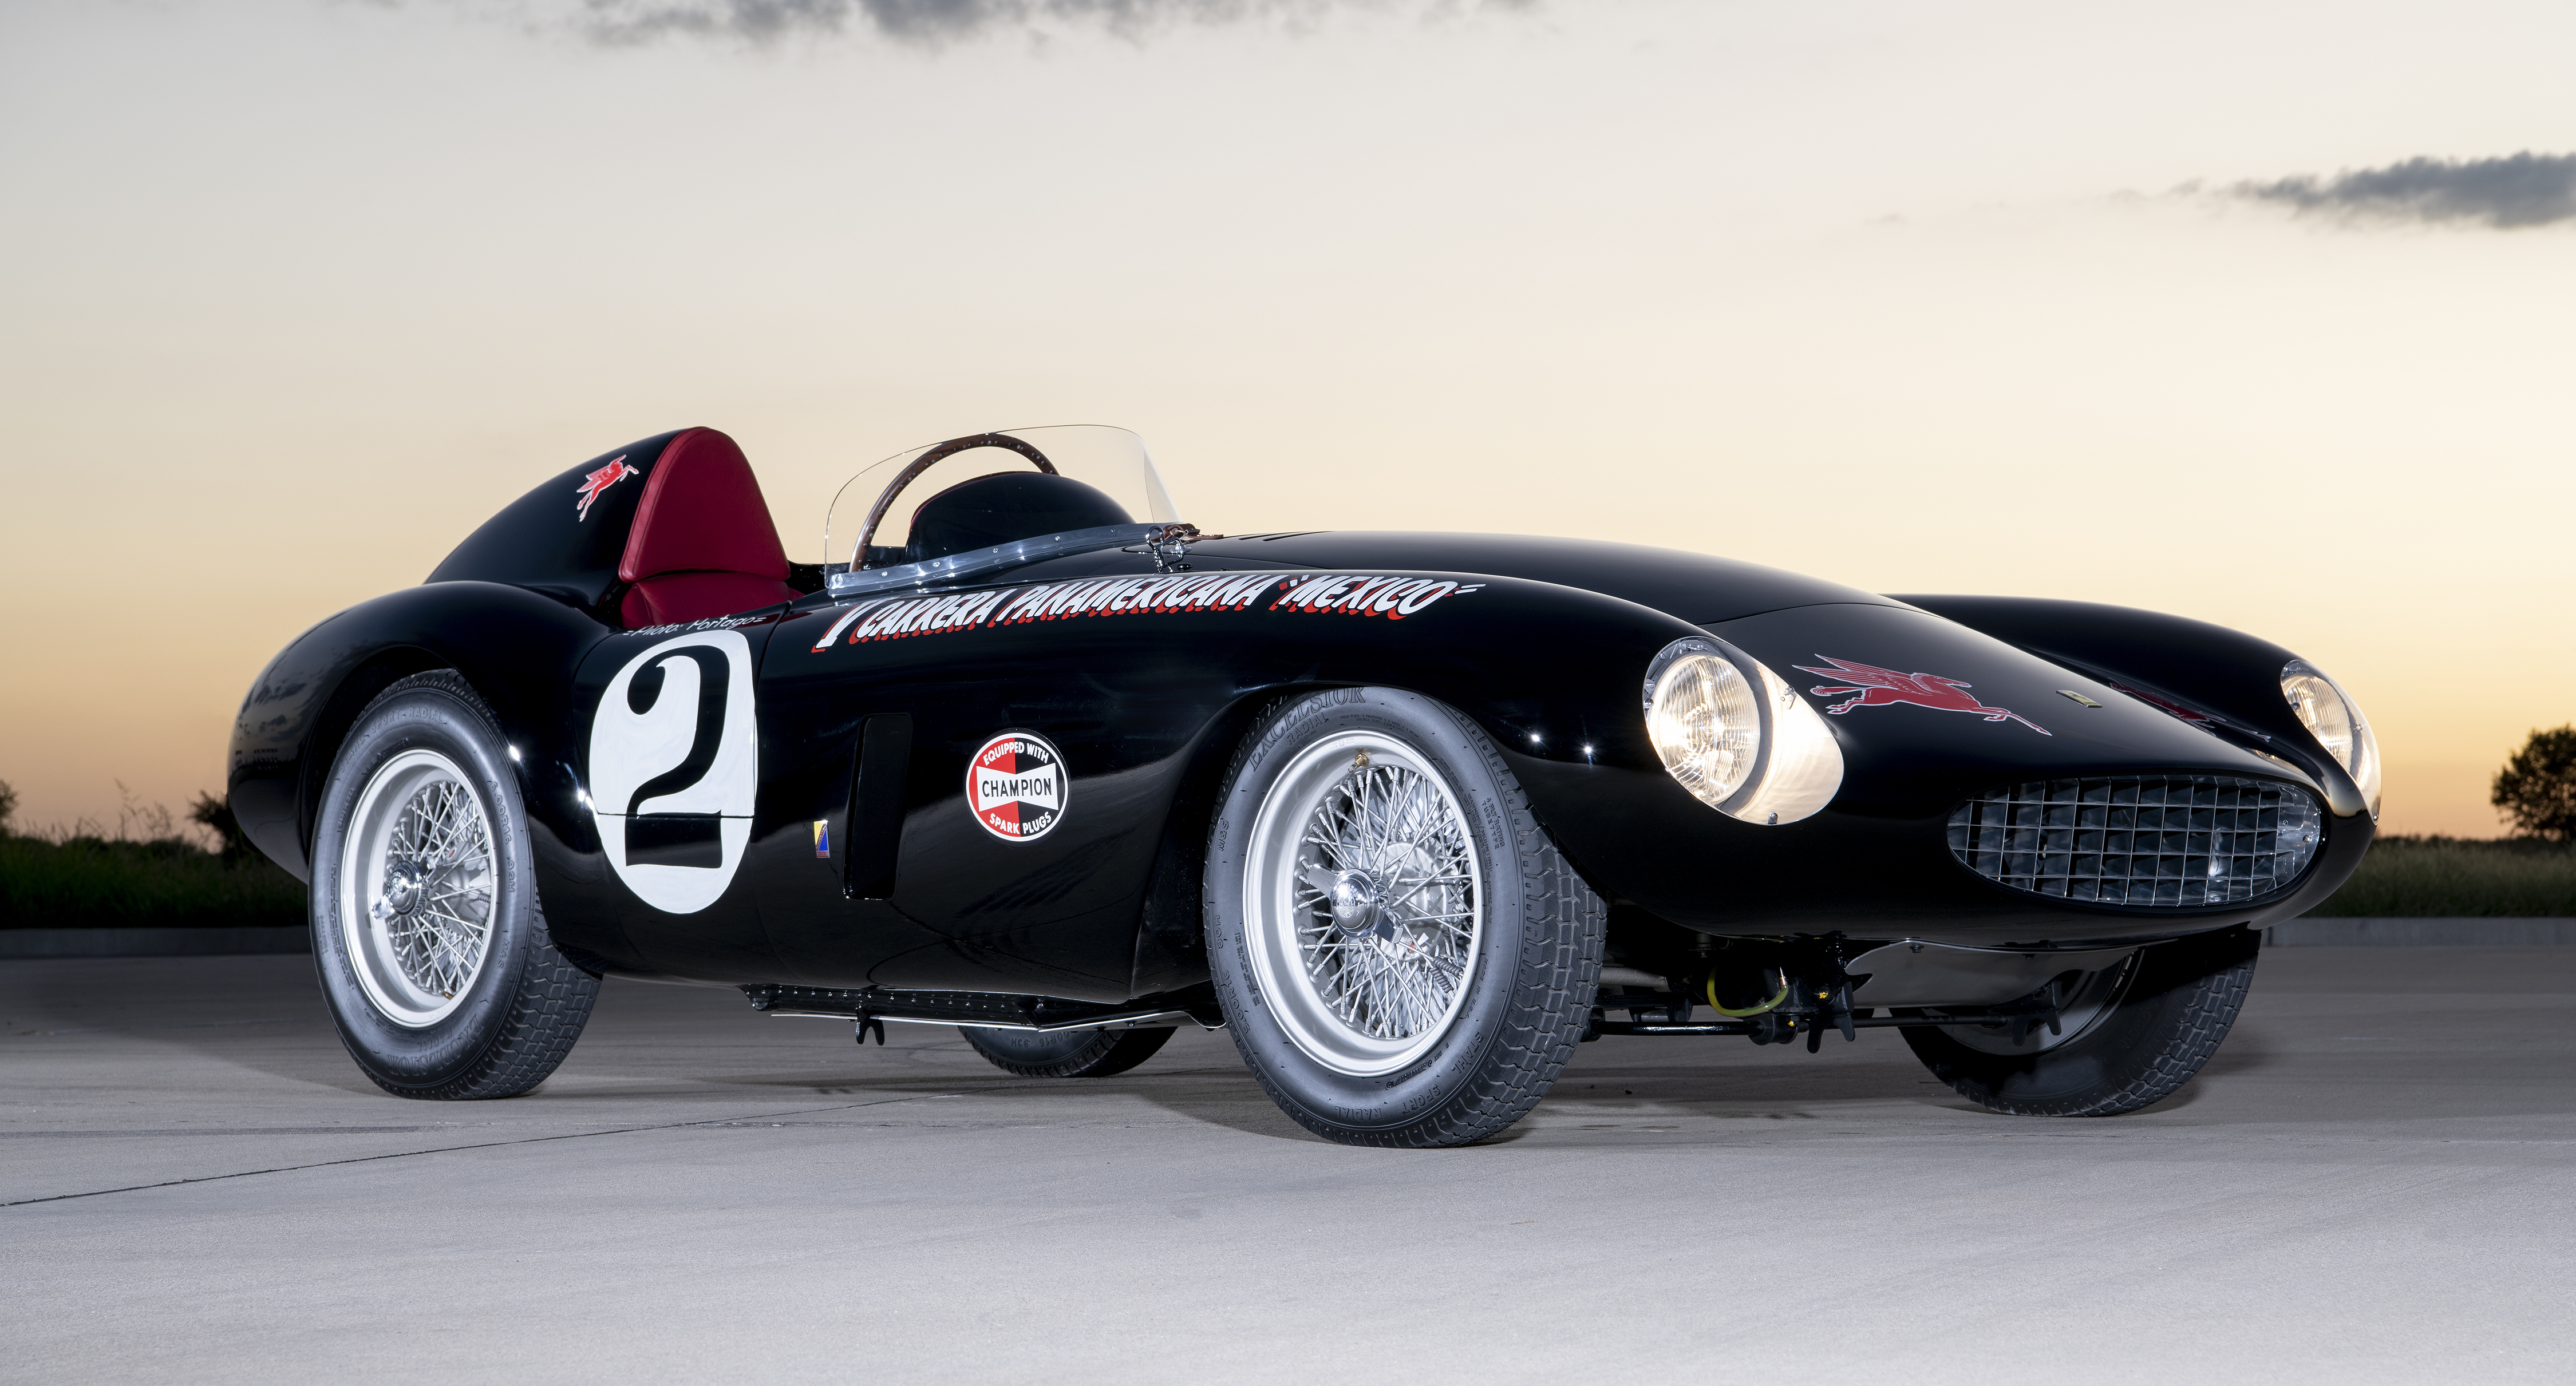 1954 年法拉利750 Monza 榮膺半島經典出類拔萃大奬 Business Wire